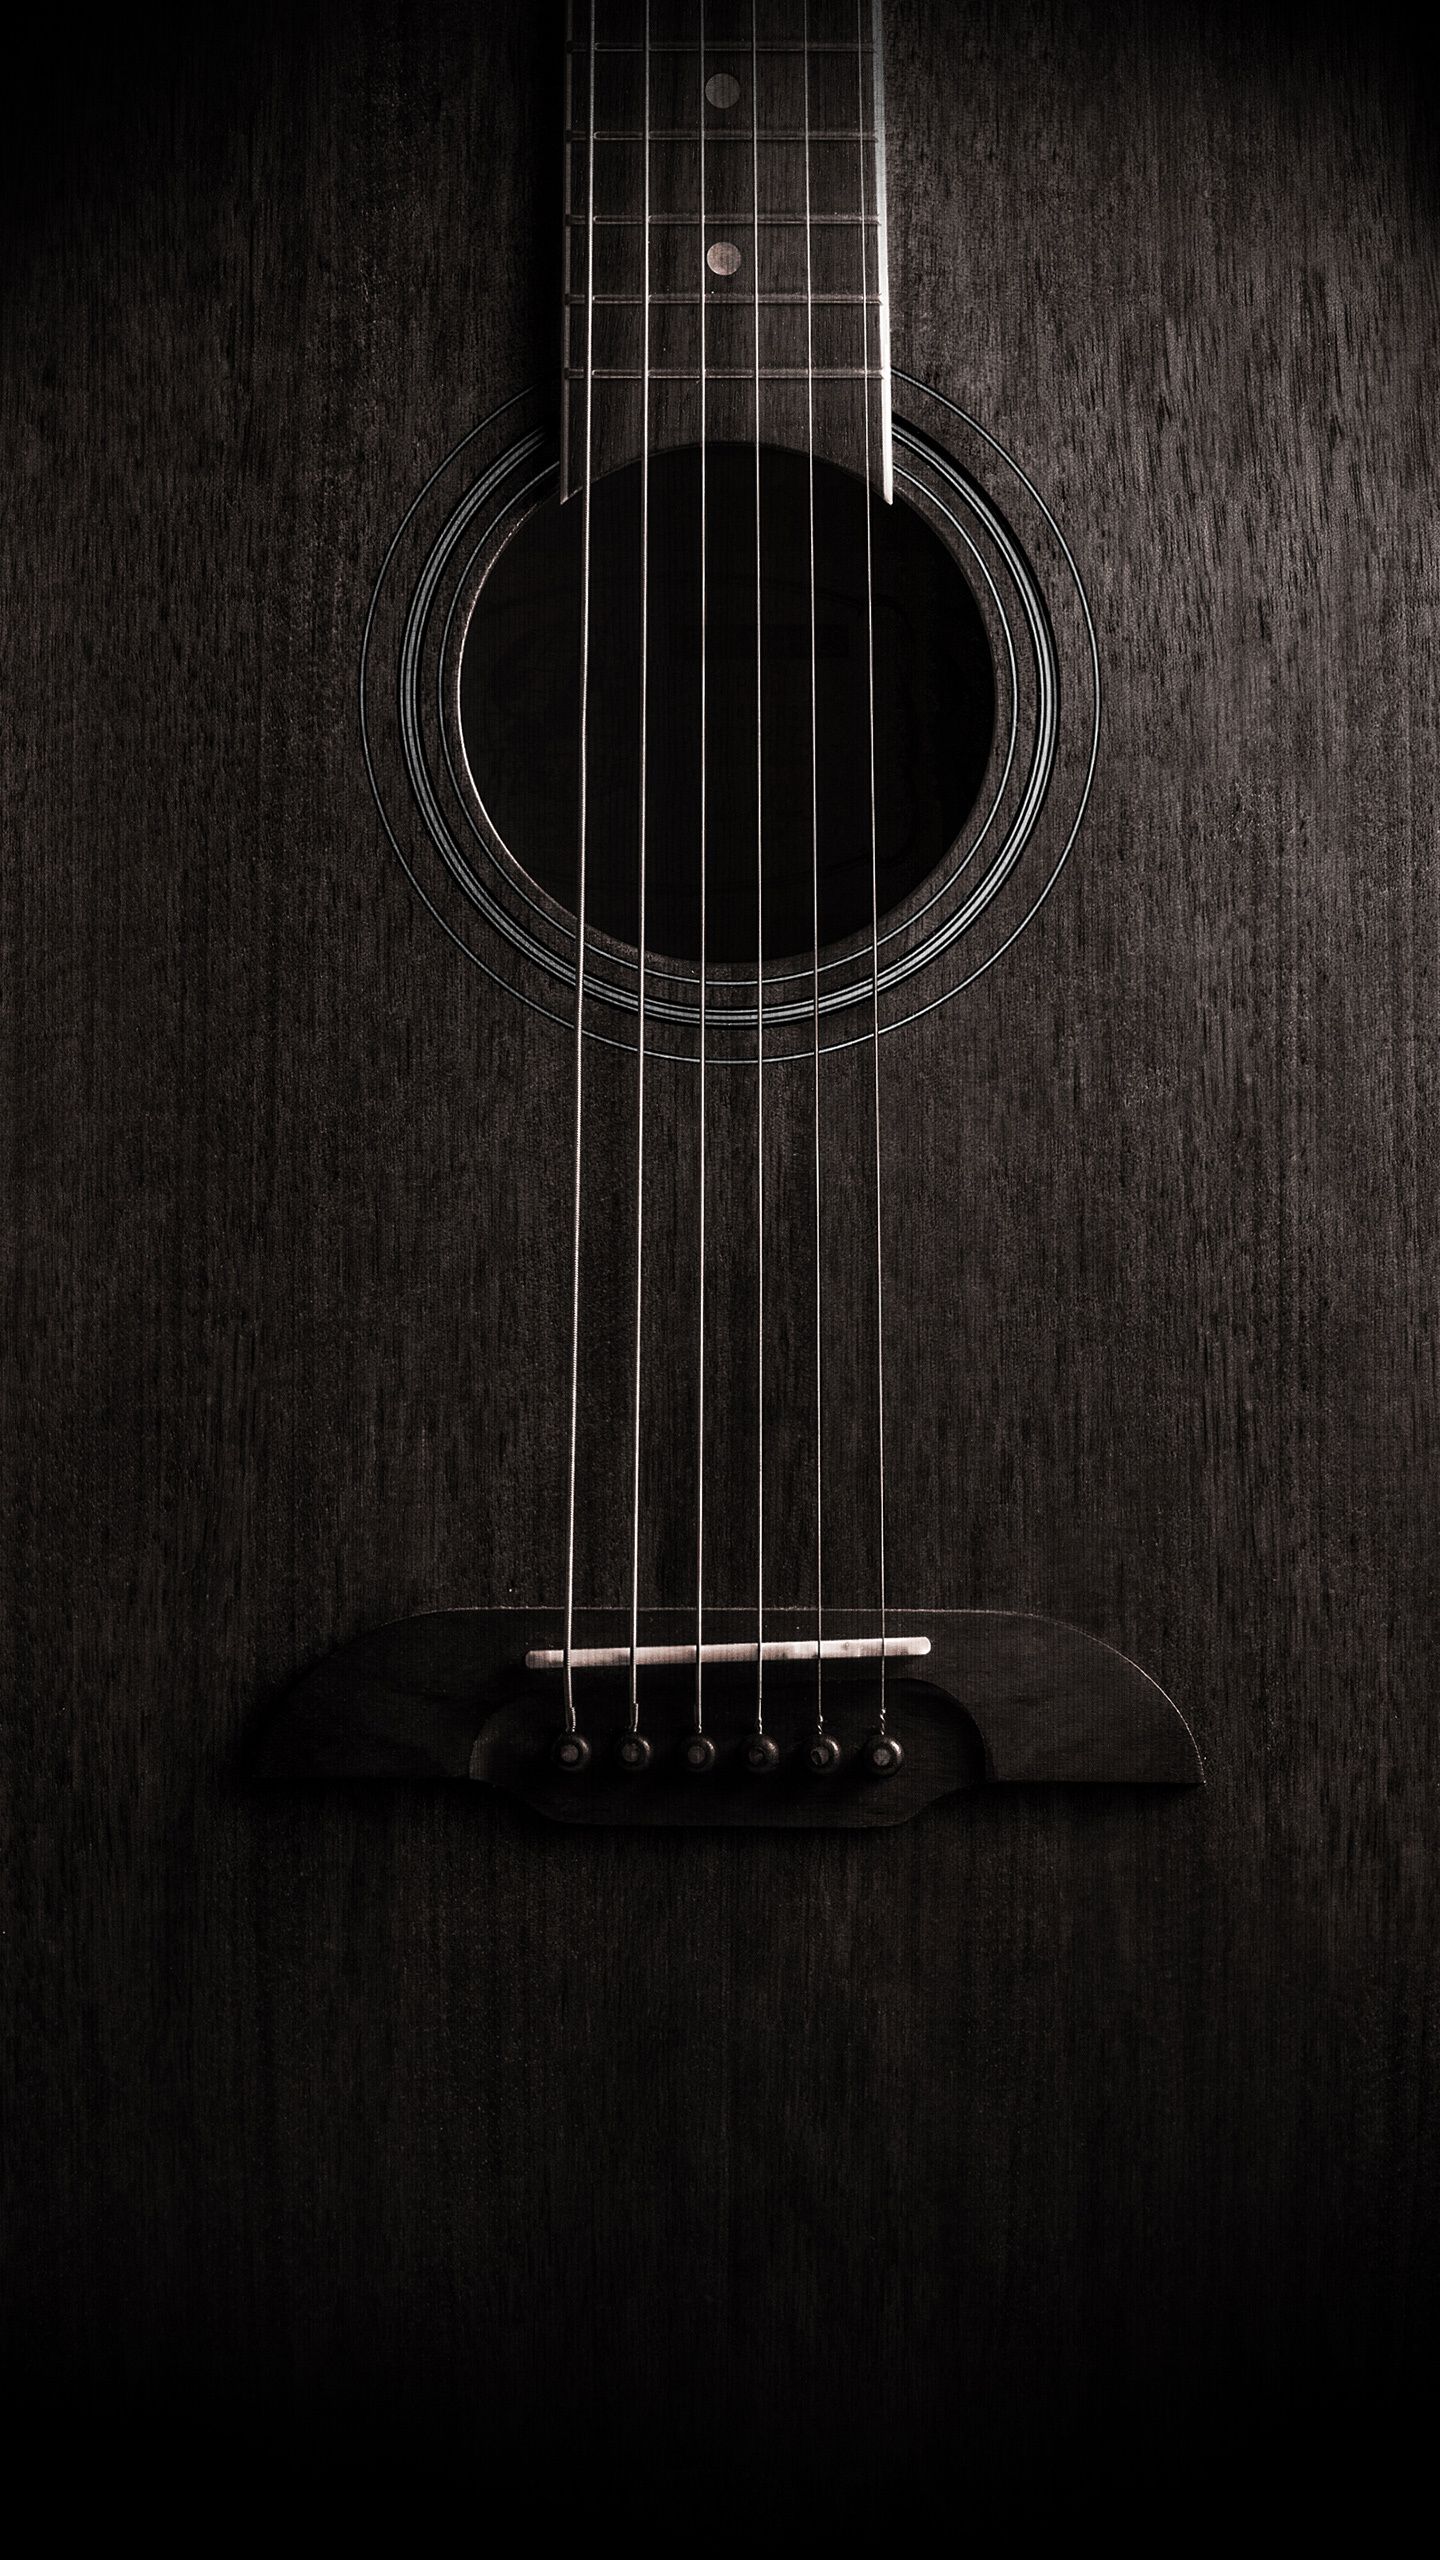 Guitar Wallpaper iPhone, Music Wallpaper, Mobile Wallpaper